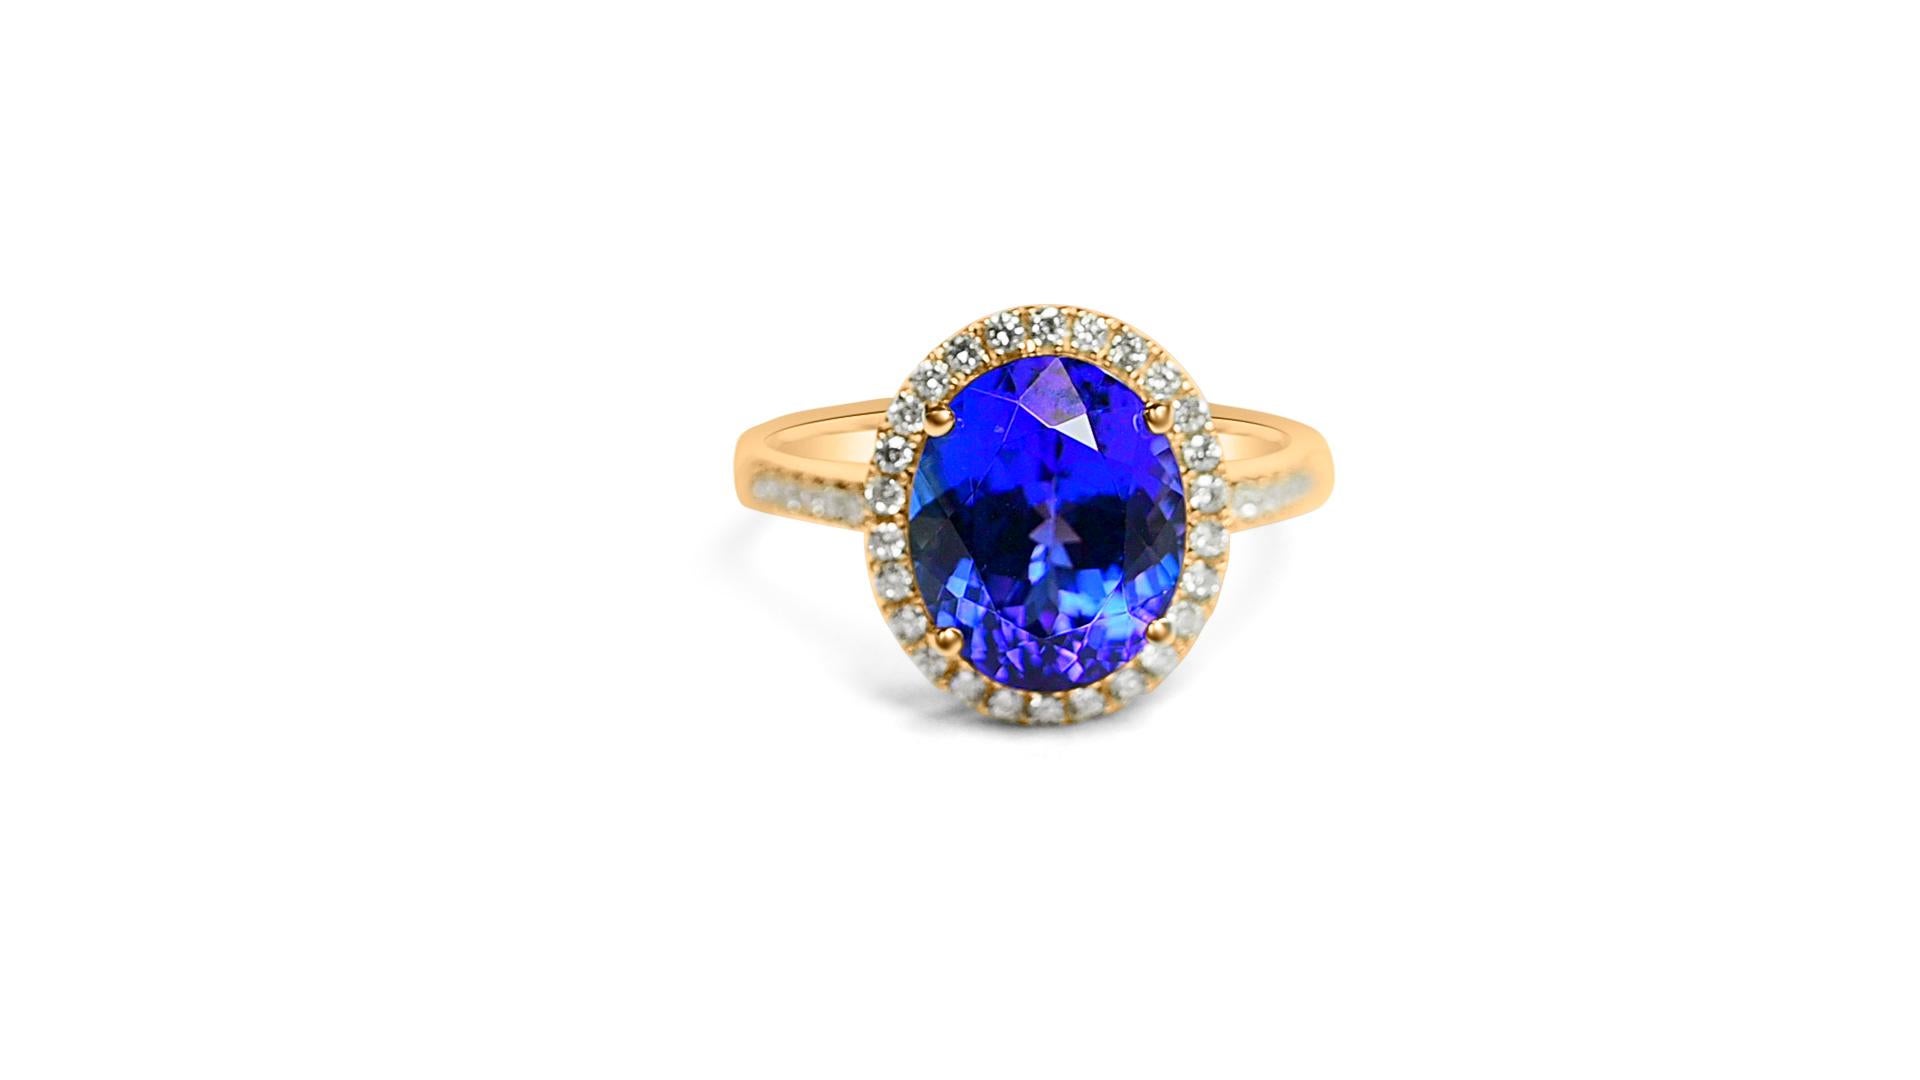 Willkommen bei Blue Star Gems NY LLC! Entdecken Sie beliebte Designs für Verlobungs-Ohrstecker und Hochzeits-Ohrringe, von klassisch bis vintage inspiriert. Wir bieten Joyful-Schmuck für den Alltag. Nur für Sie. Wir gehen über die aktuellen